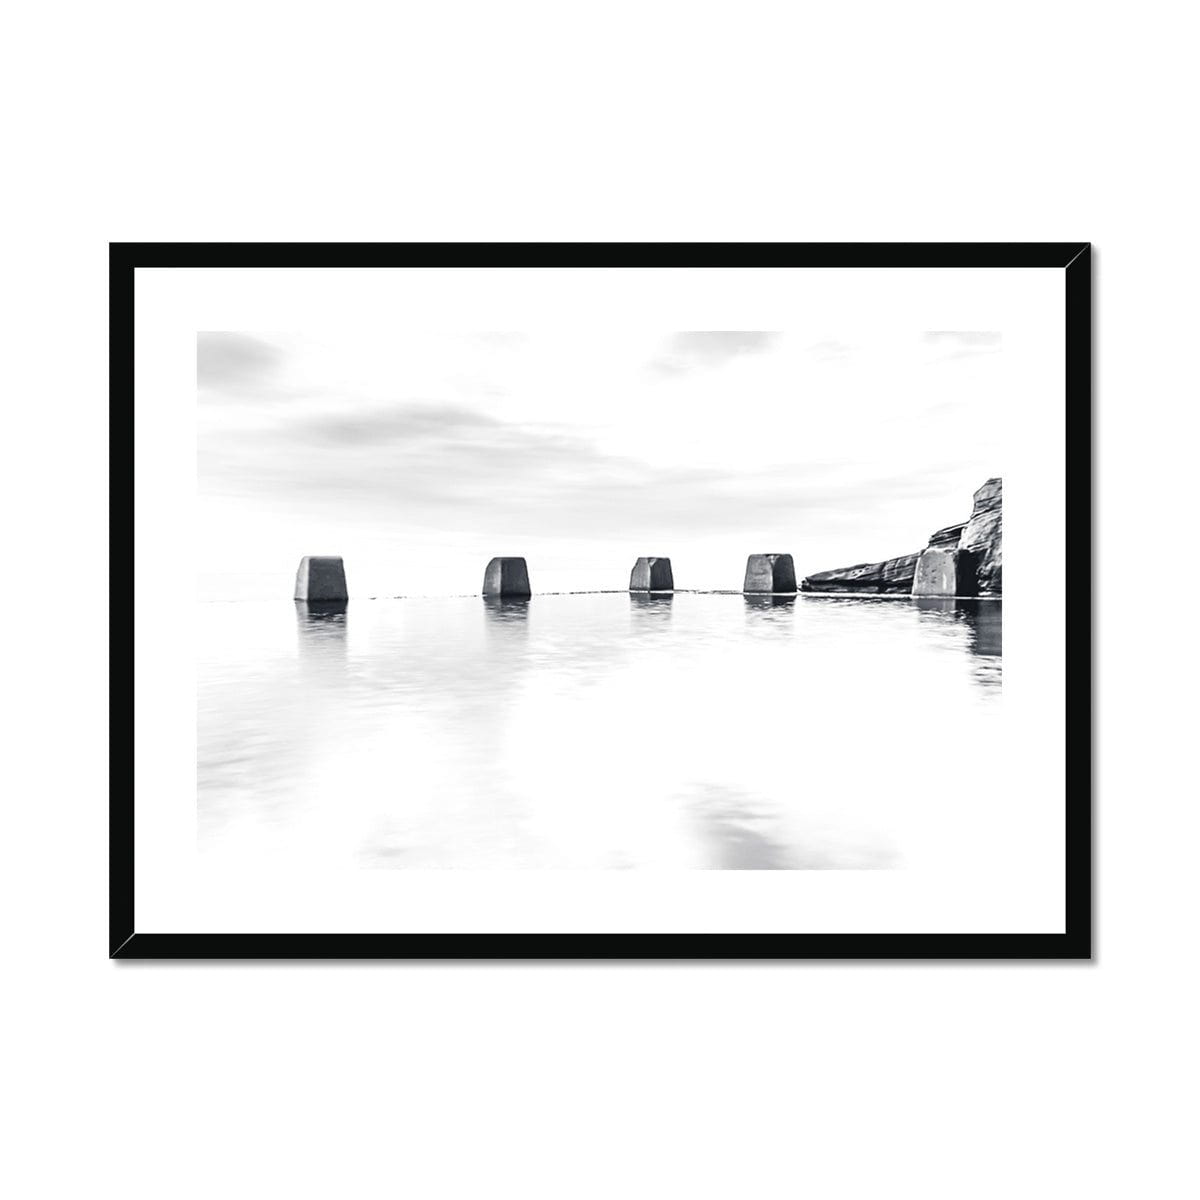 Adam Davies Framed 28"x20" / Black Frame Black & White Pool Blocks Framed & Mounted Print